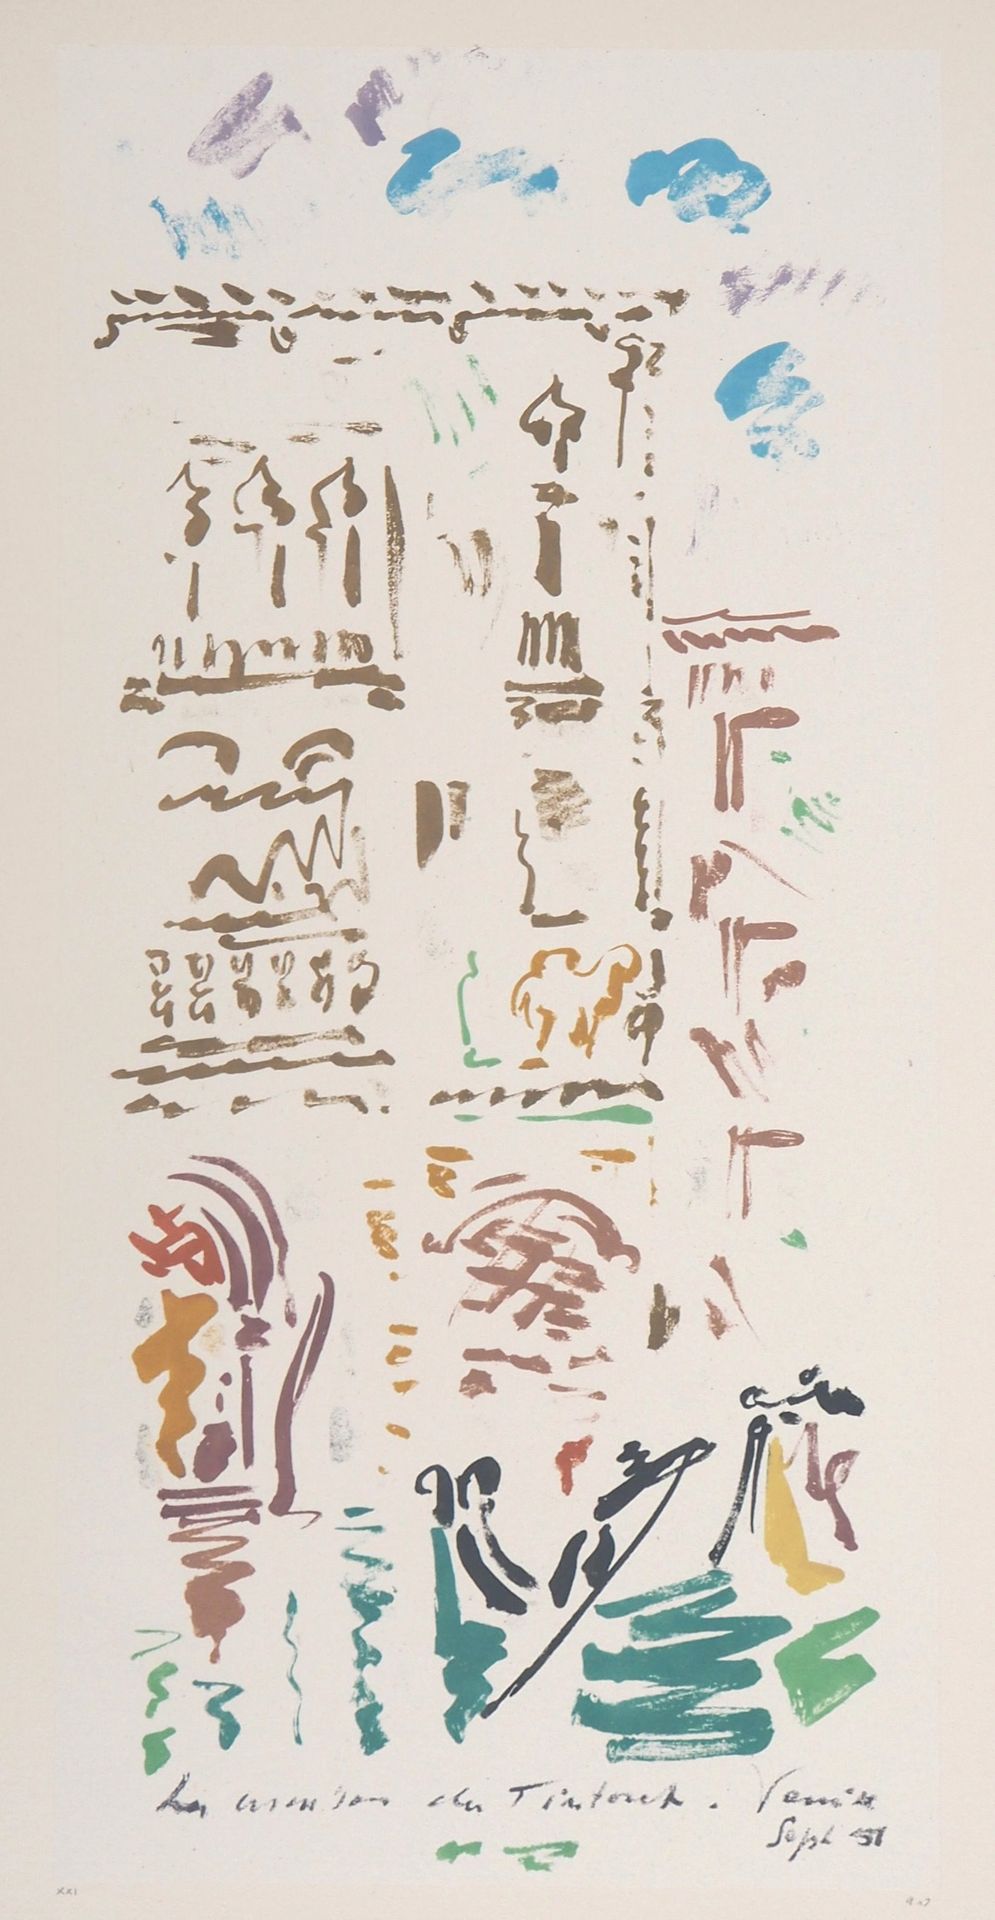 André MASSON André MASSON

丁托列托之家，威尼斯

原始石版画

签有艺术家的字样

涂在牛皮纸上的瓷纸，52.5 x 37.5厘米
&hellip;